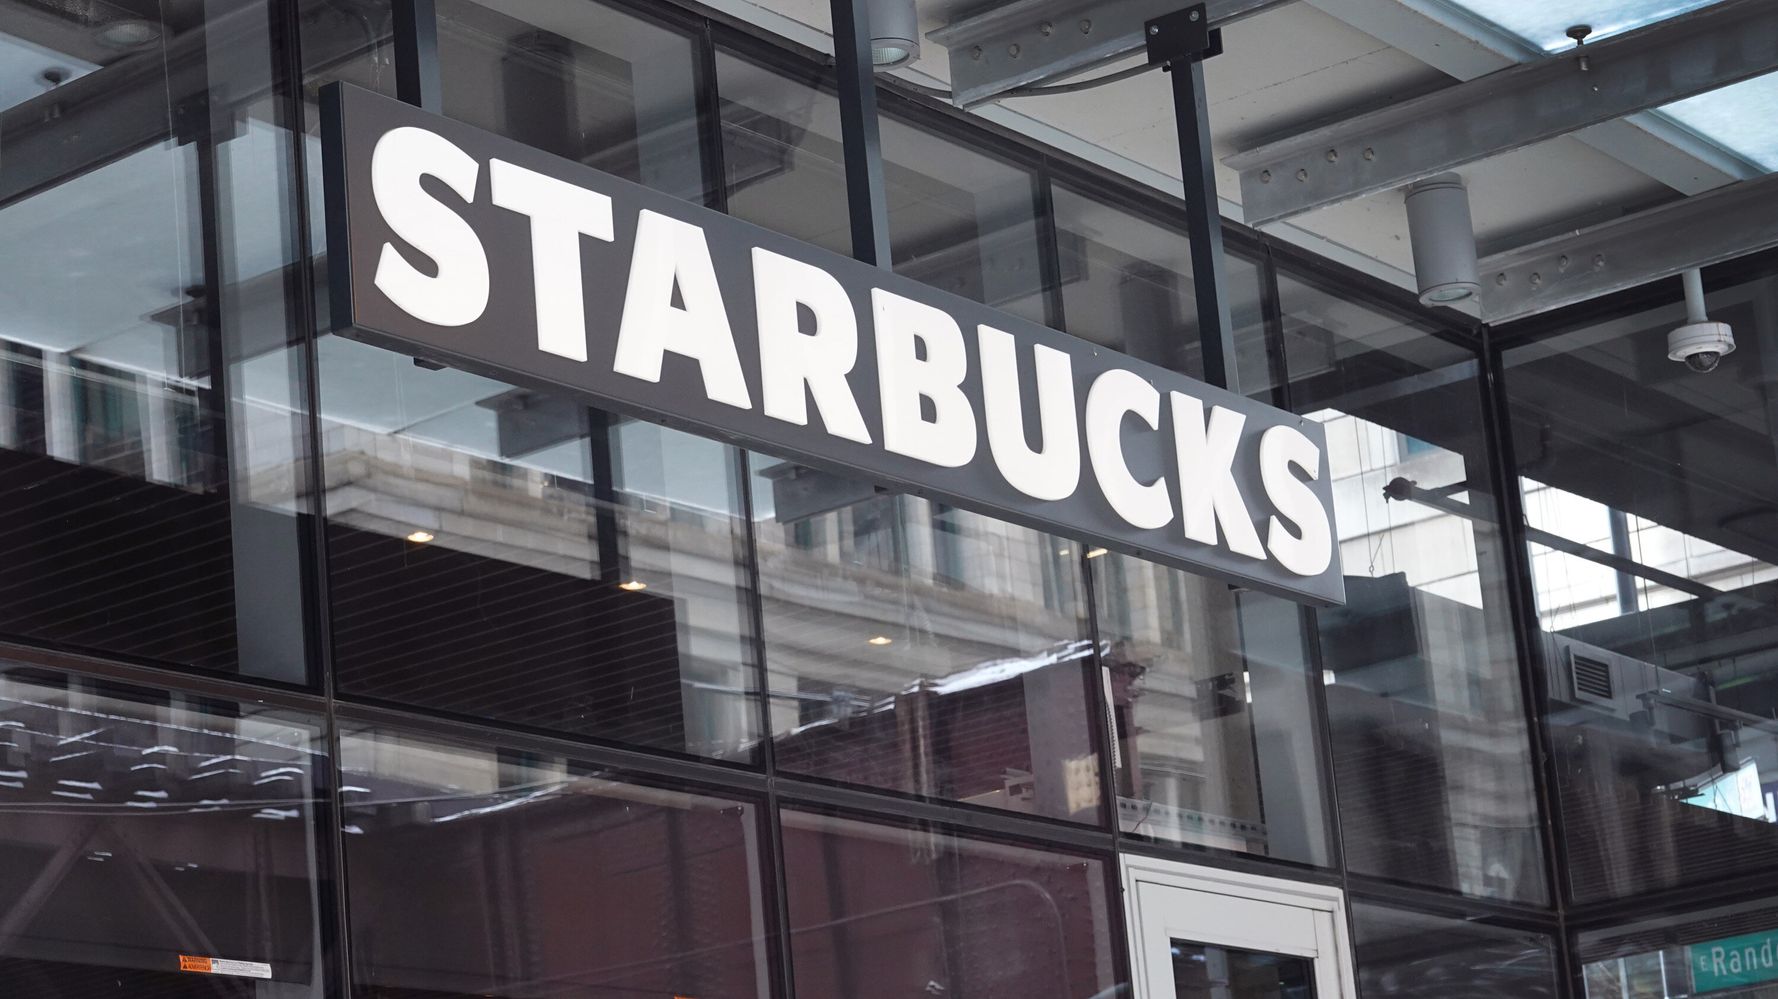 3 autres magasins Starbucks votent pour se syndiquer dans une autre campagne de victoire pour le travail